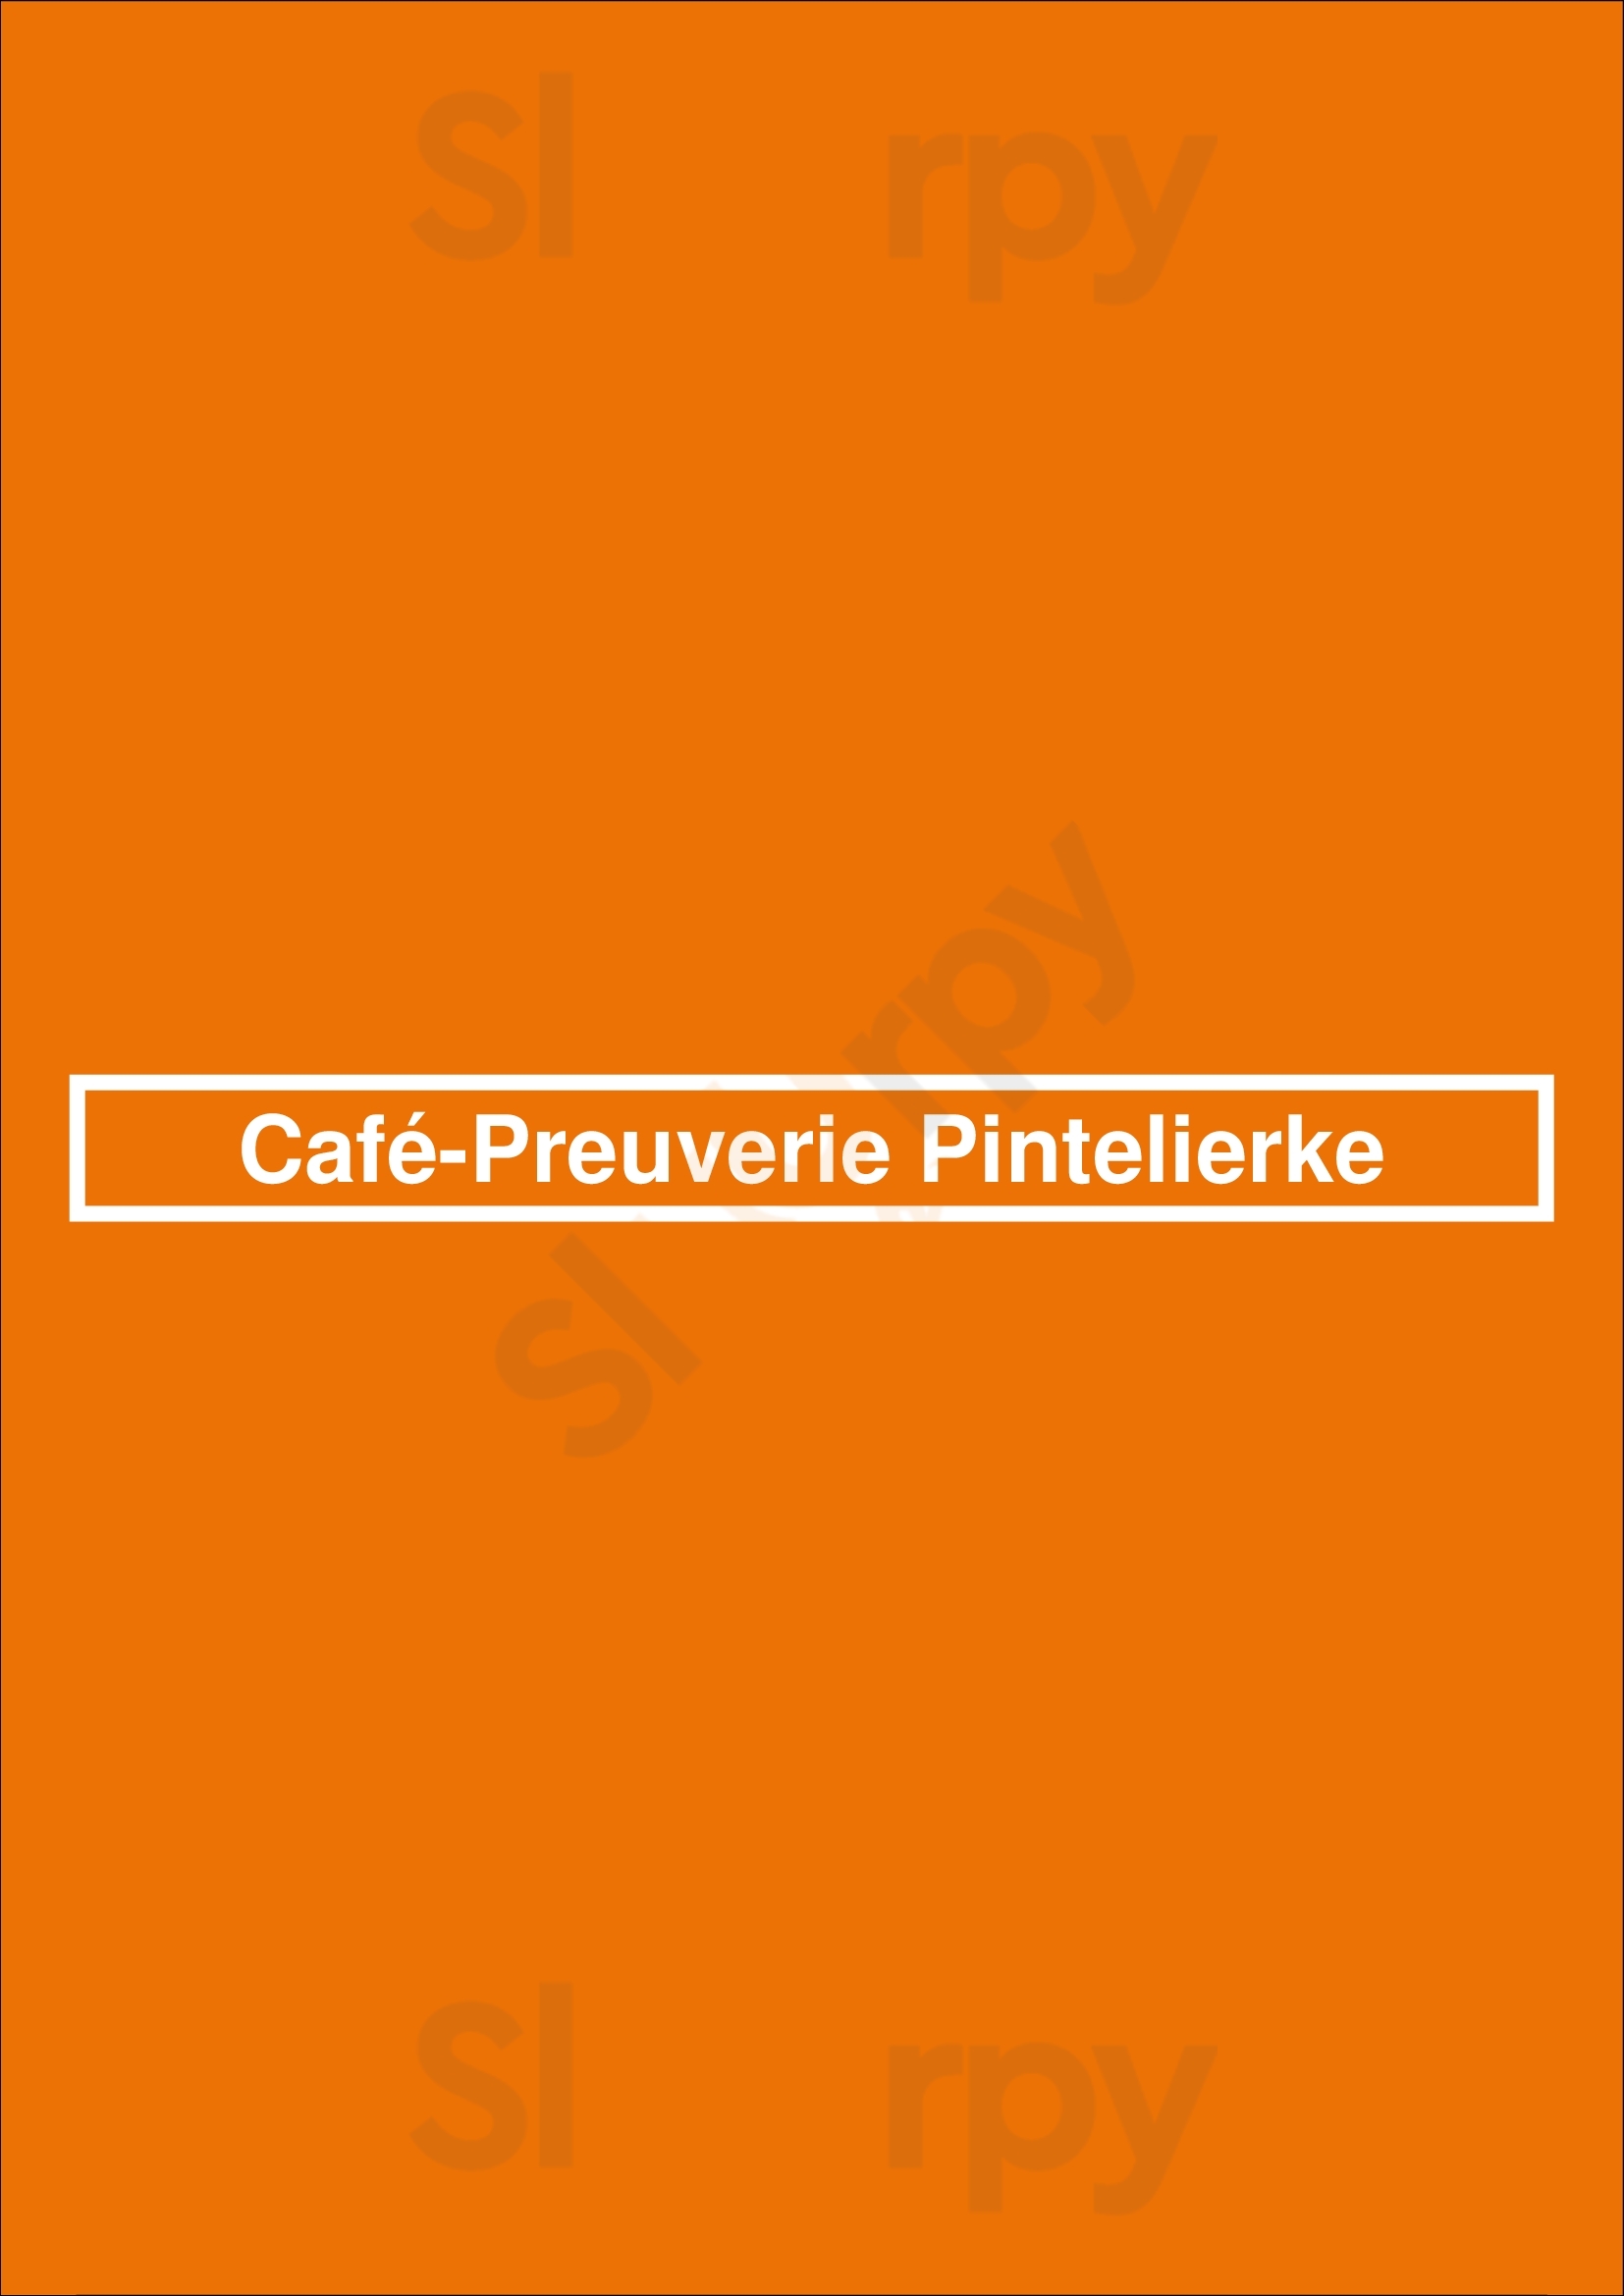 Café-preuverie Pintelierke Stein Menu - 1